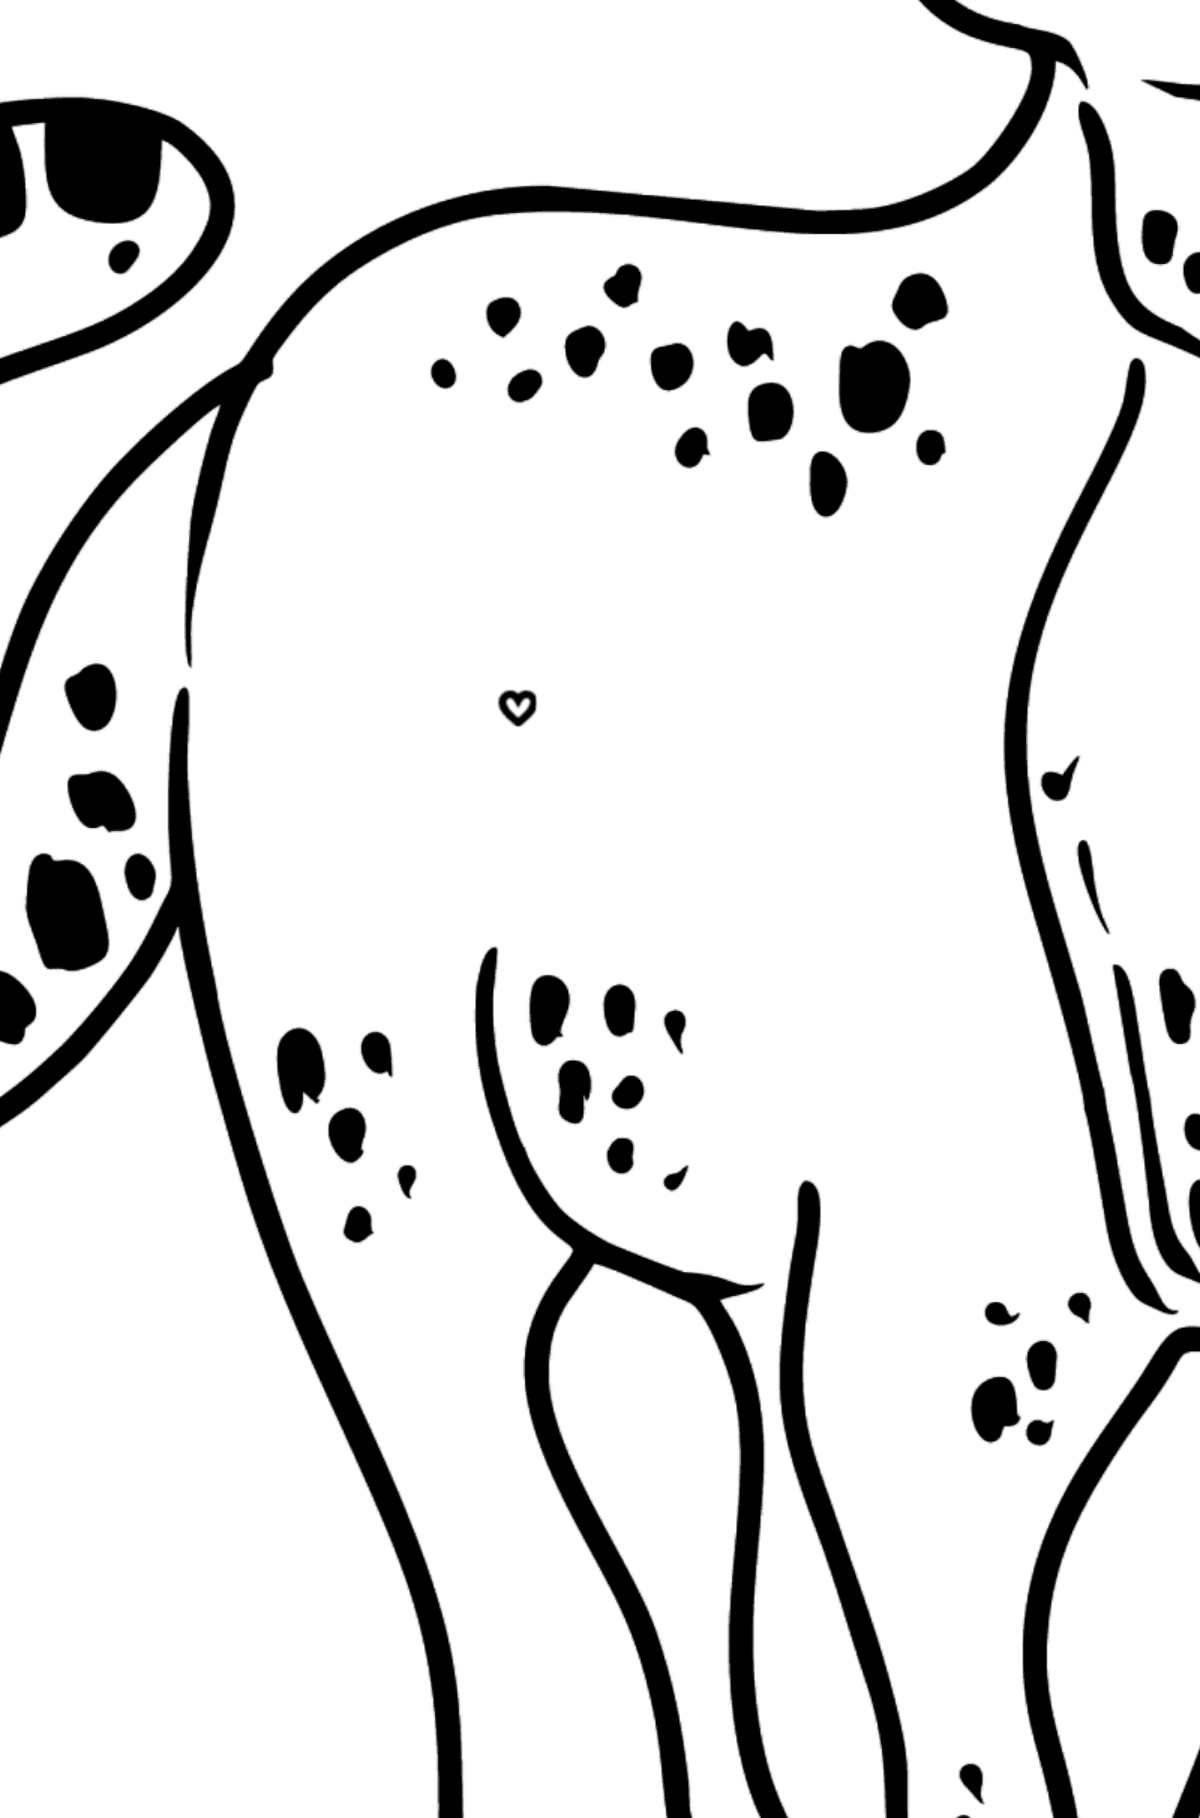 Dibujo de leopardo para colorear - Colorear por Símbolos para Niños